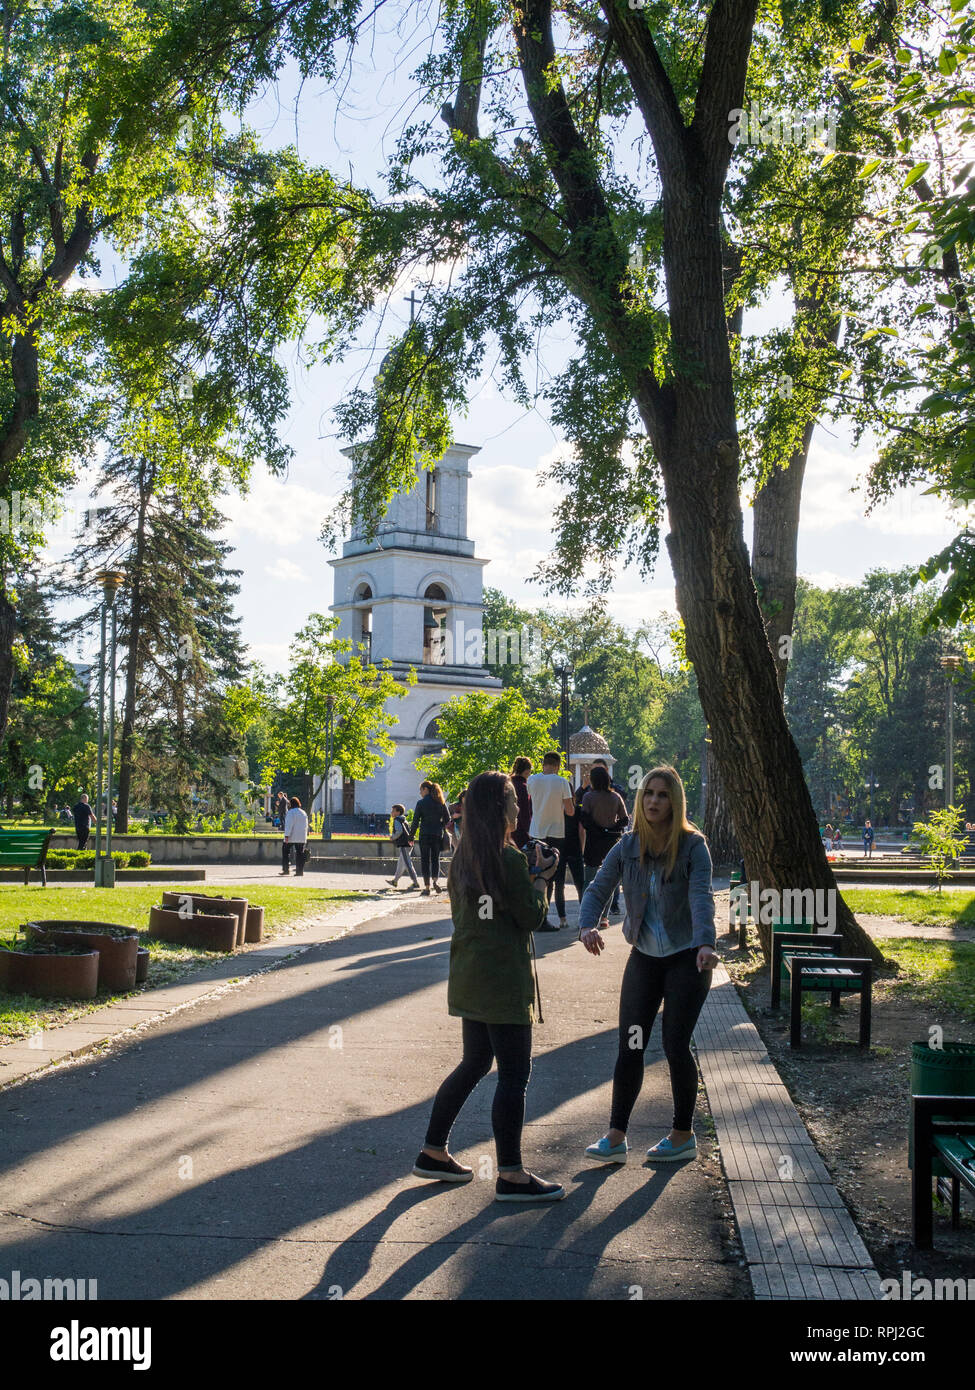 La cathédrale de la nativité dans Parc de la cathédrale à Chisinau, la capitale de la Moldavie. Banque D'Images